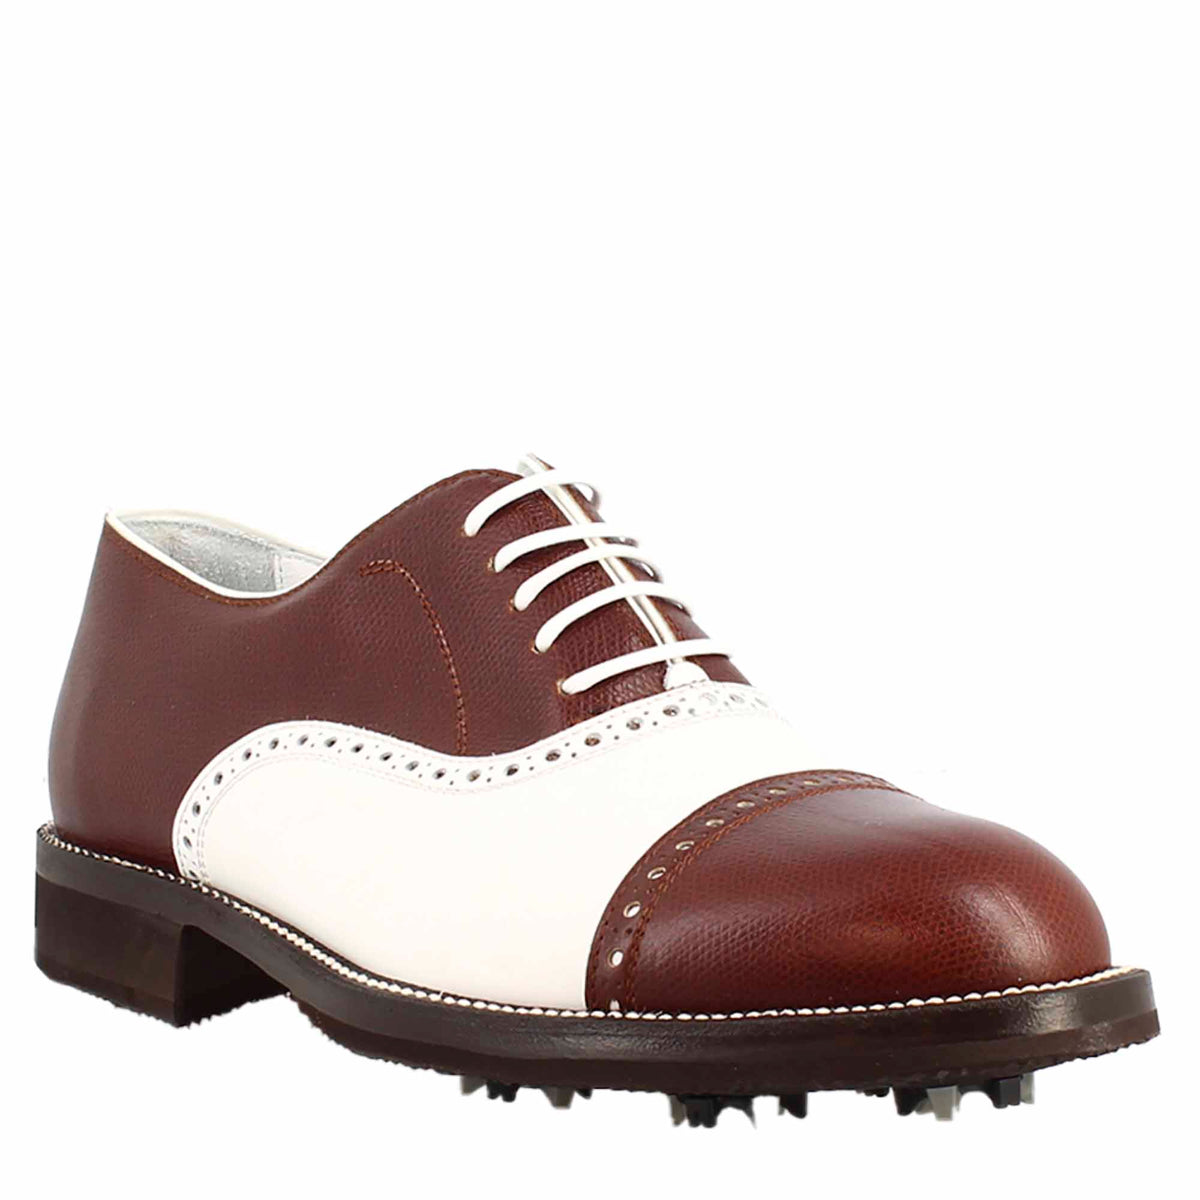 Chaussures de golf LRP pour homme en cuir blanc et marron, fabriquées à la main, avec des détails de broderie